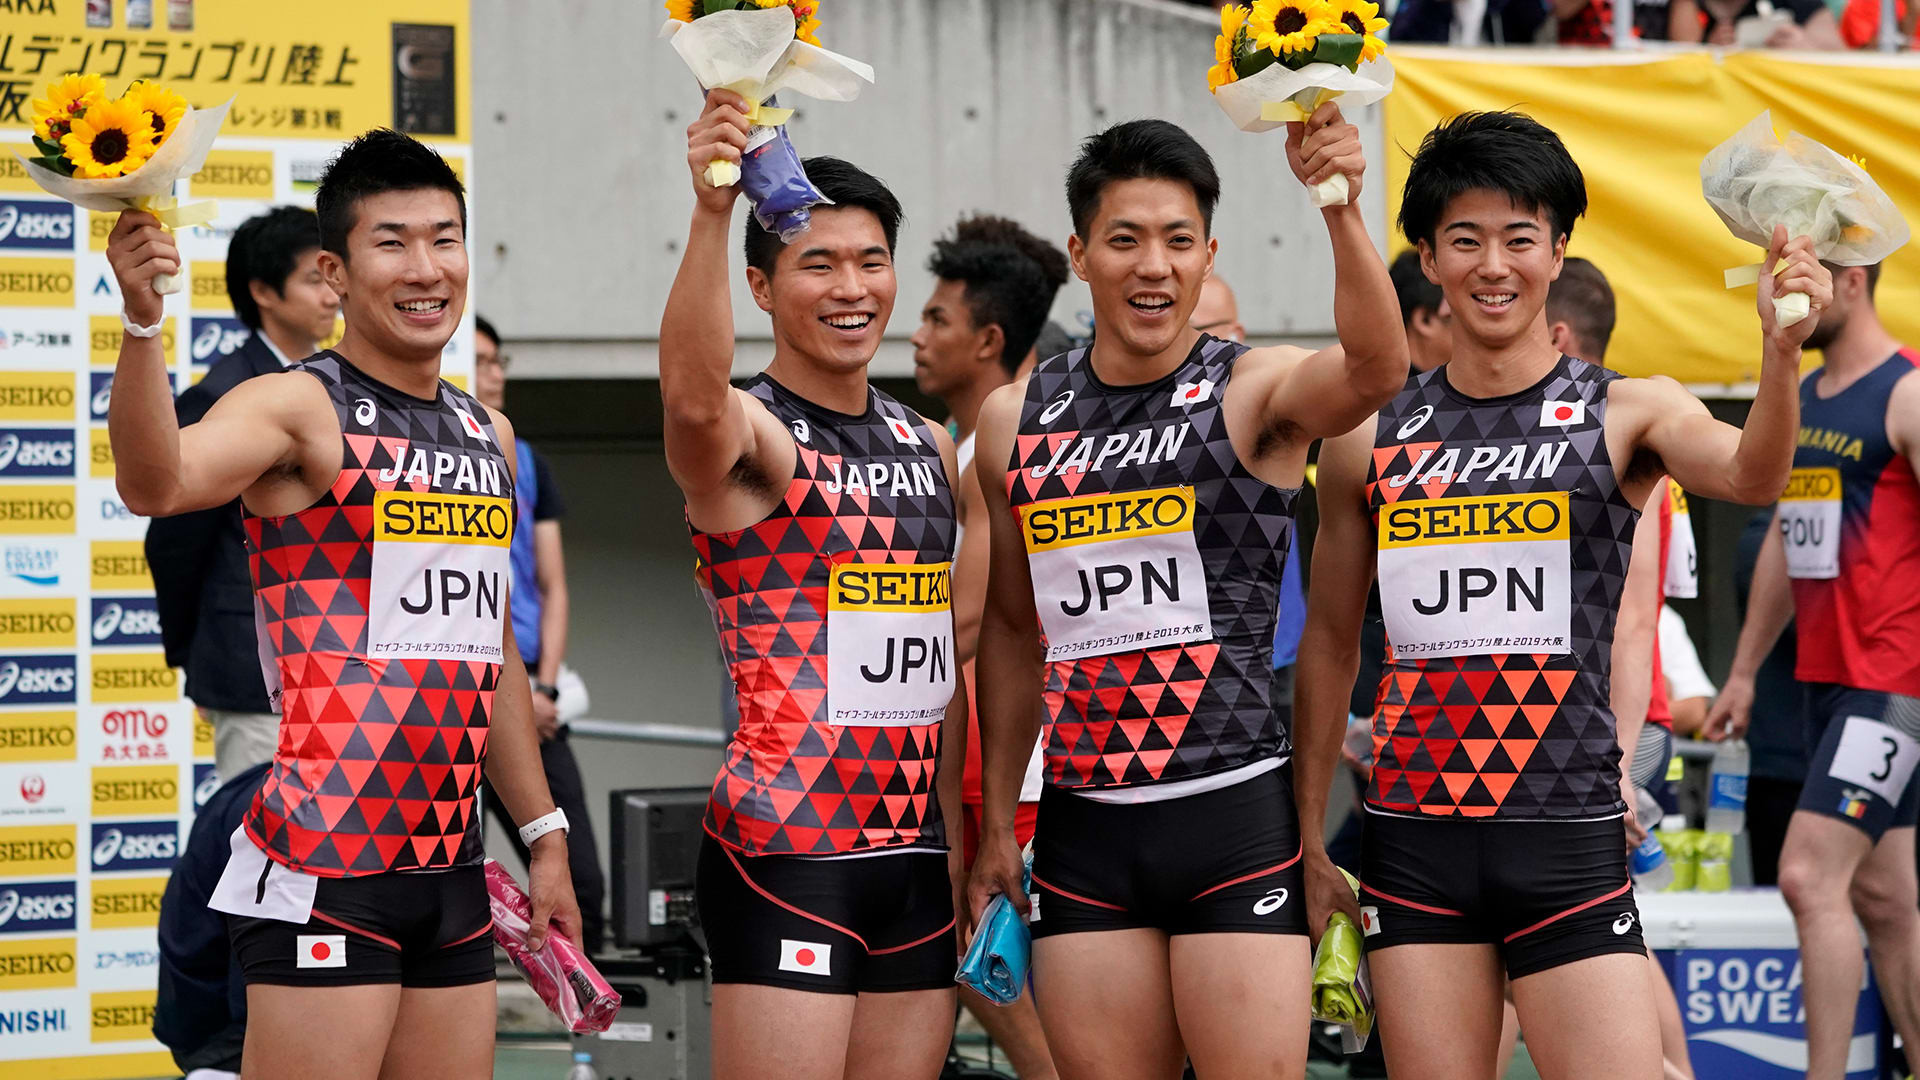 陸上セイコー ゴールデンgp大阪 男子400mリレーで日本が優勝 世界